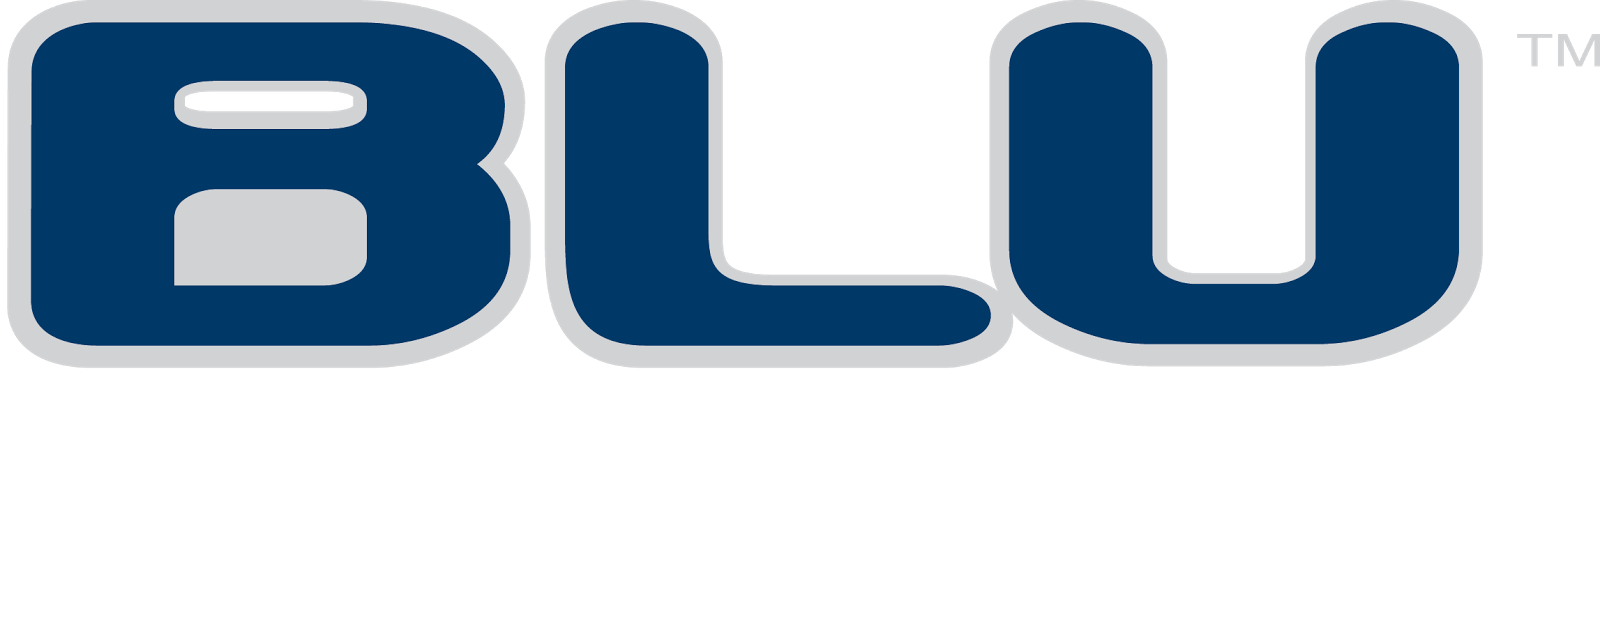 Blu Classic - Blu Your Mind (1600x631)